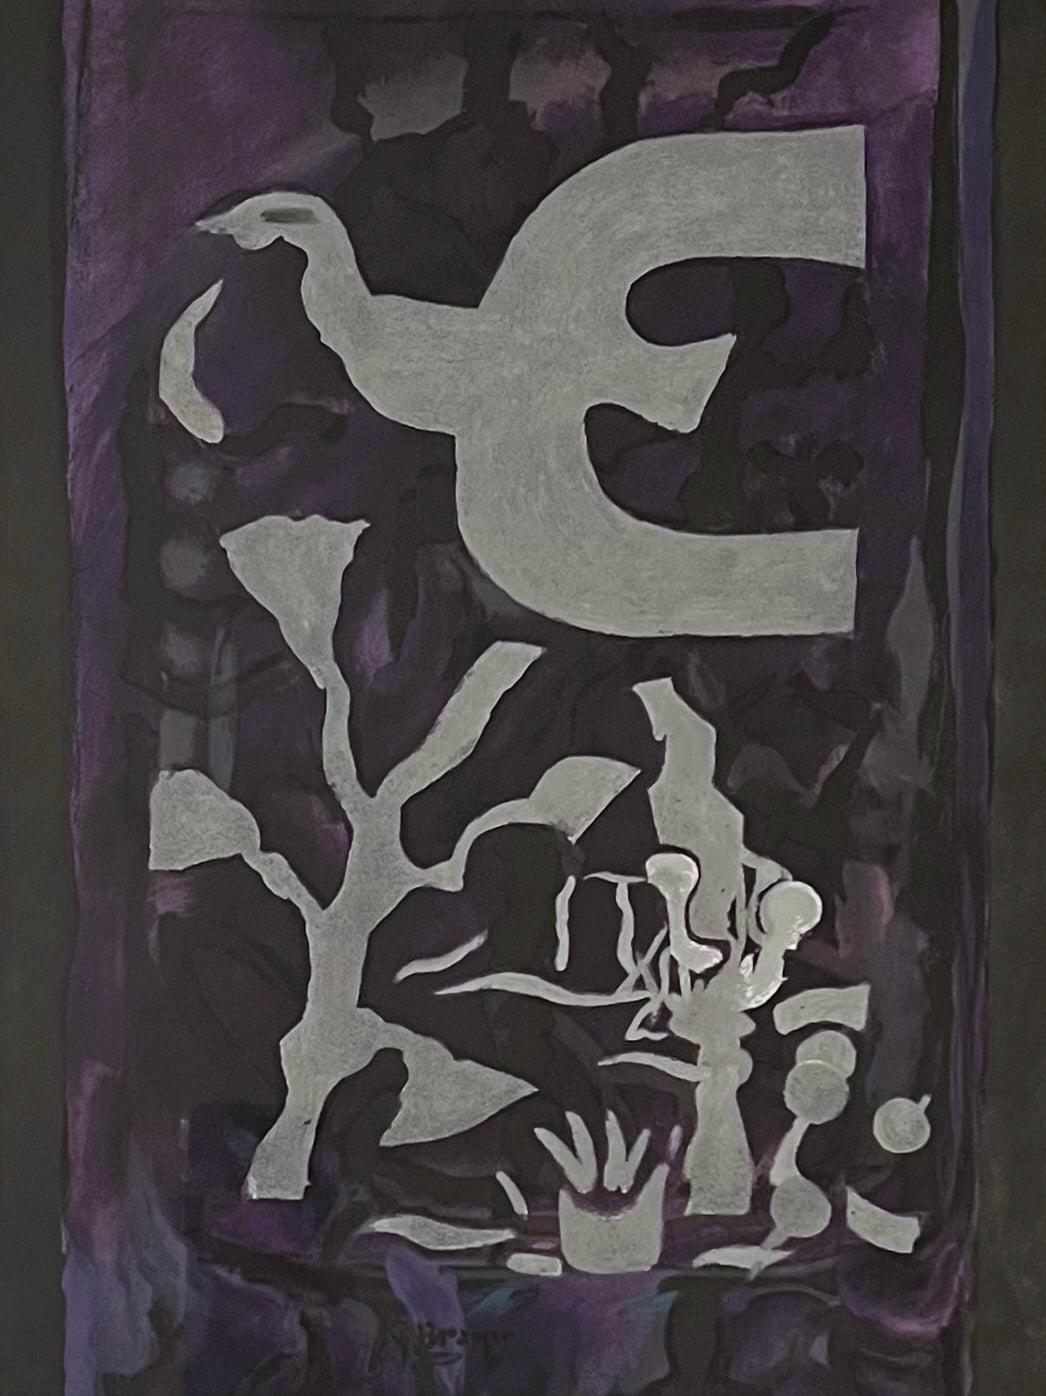 Künstler: Georges Braque
Titel: Chappelle St. Bernard
Medium: Original-Lithographie
Jahr: 1964
Auflage: Unnumeriert
Gerahmt Größe: 21 1/4" x 17 1/4"
Blattgröße: 15" x 11"
Unterschrieben: Unsigniert